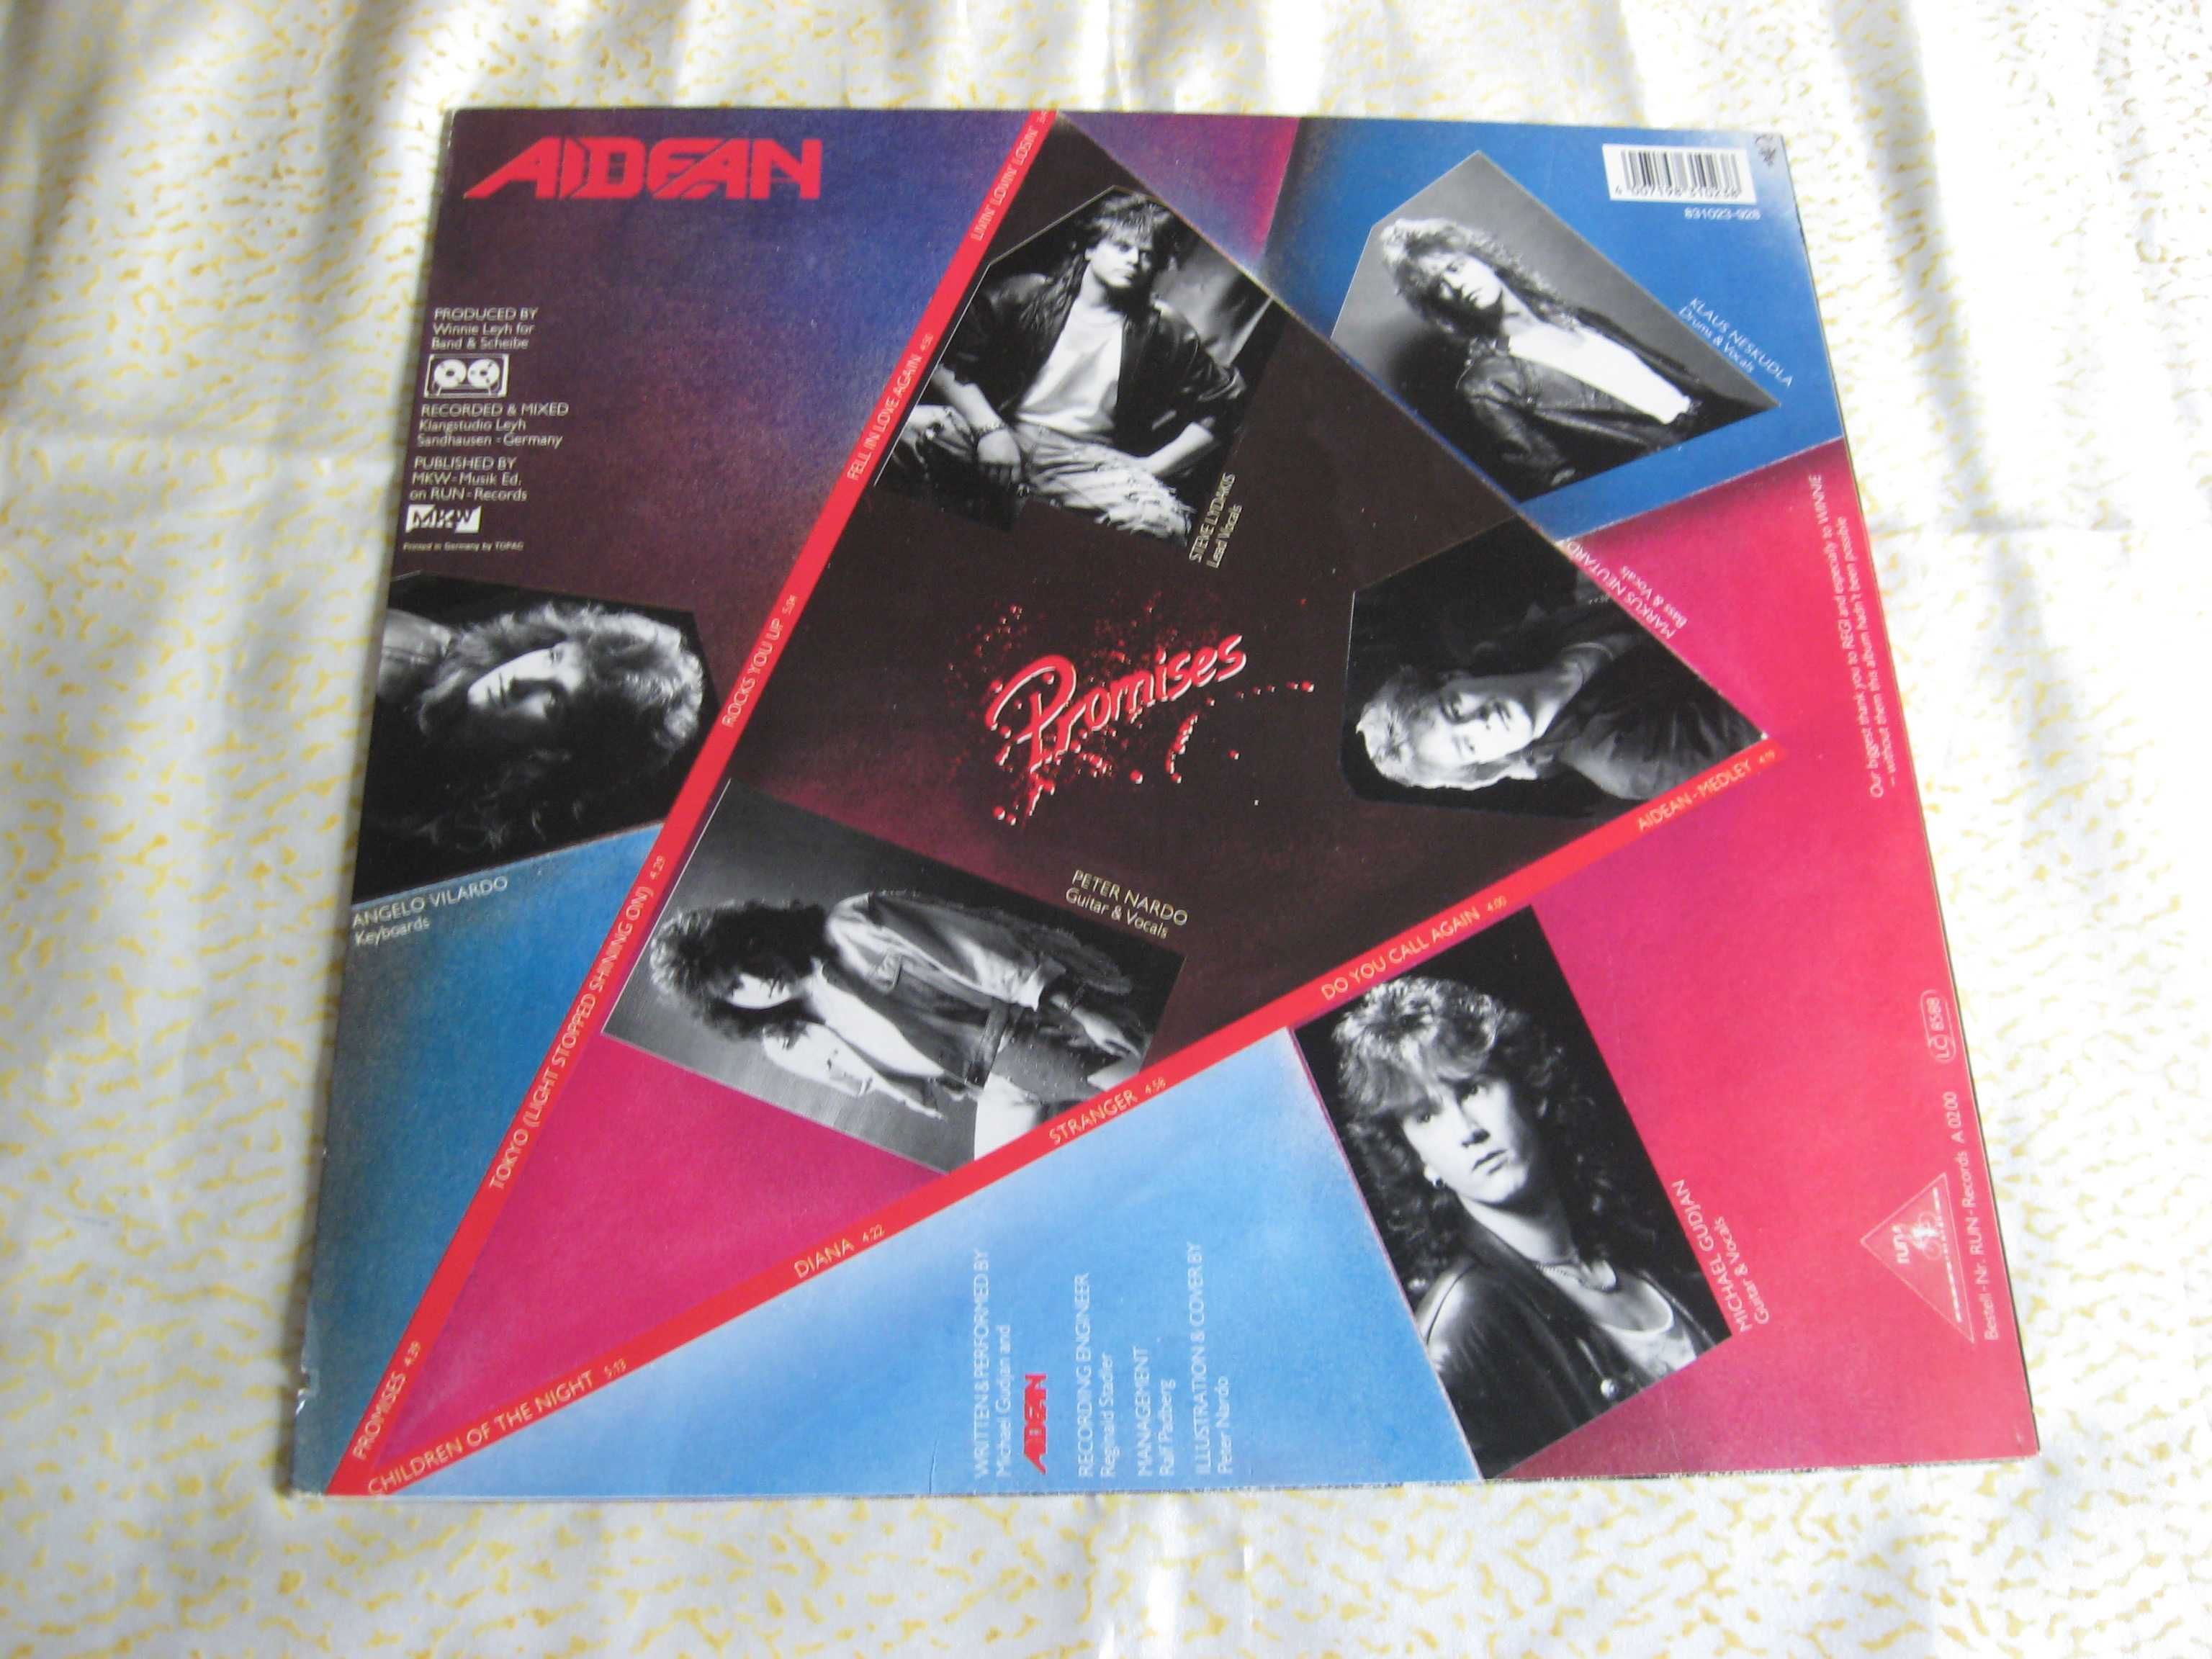 Пластинка виниловая Aidean  " Promisses " 1988  Germany